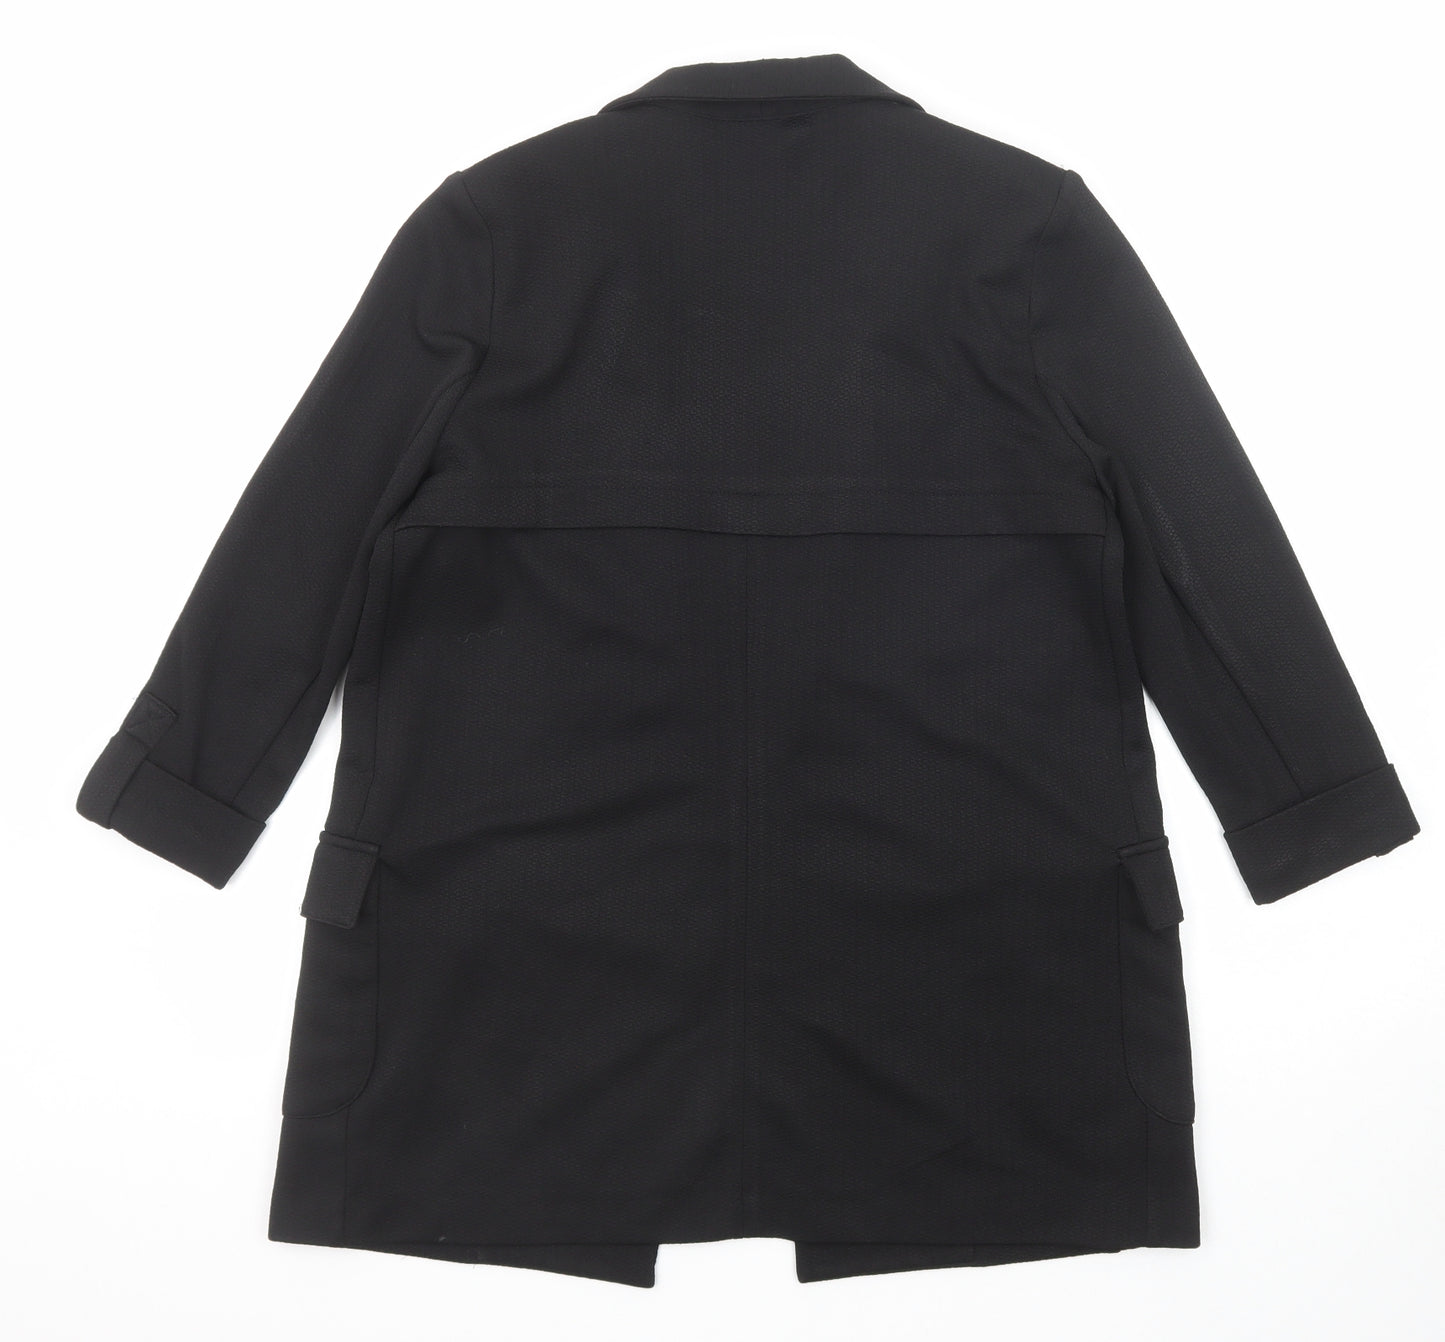 NEXT Womens Black Jacket Blazer Size 8